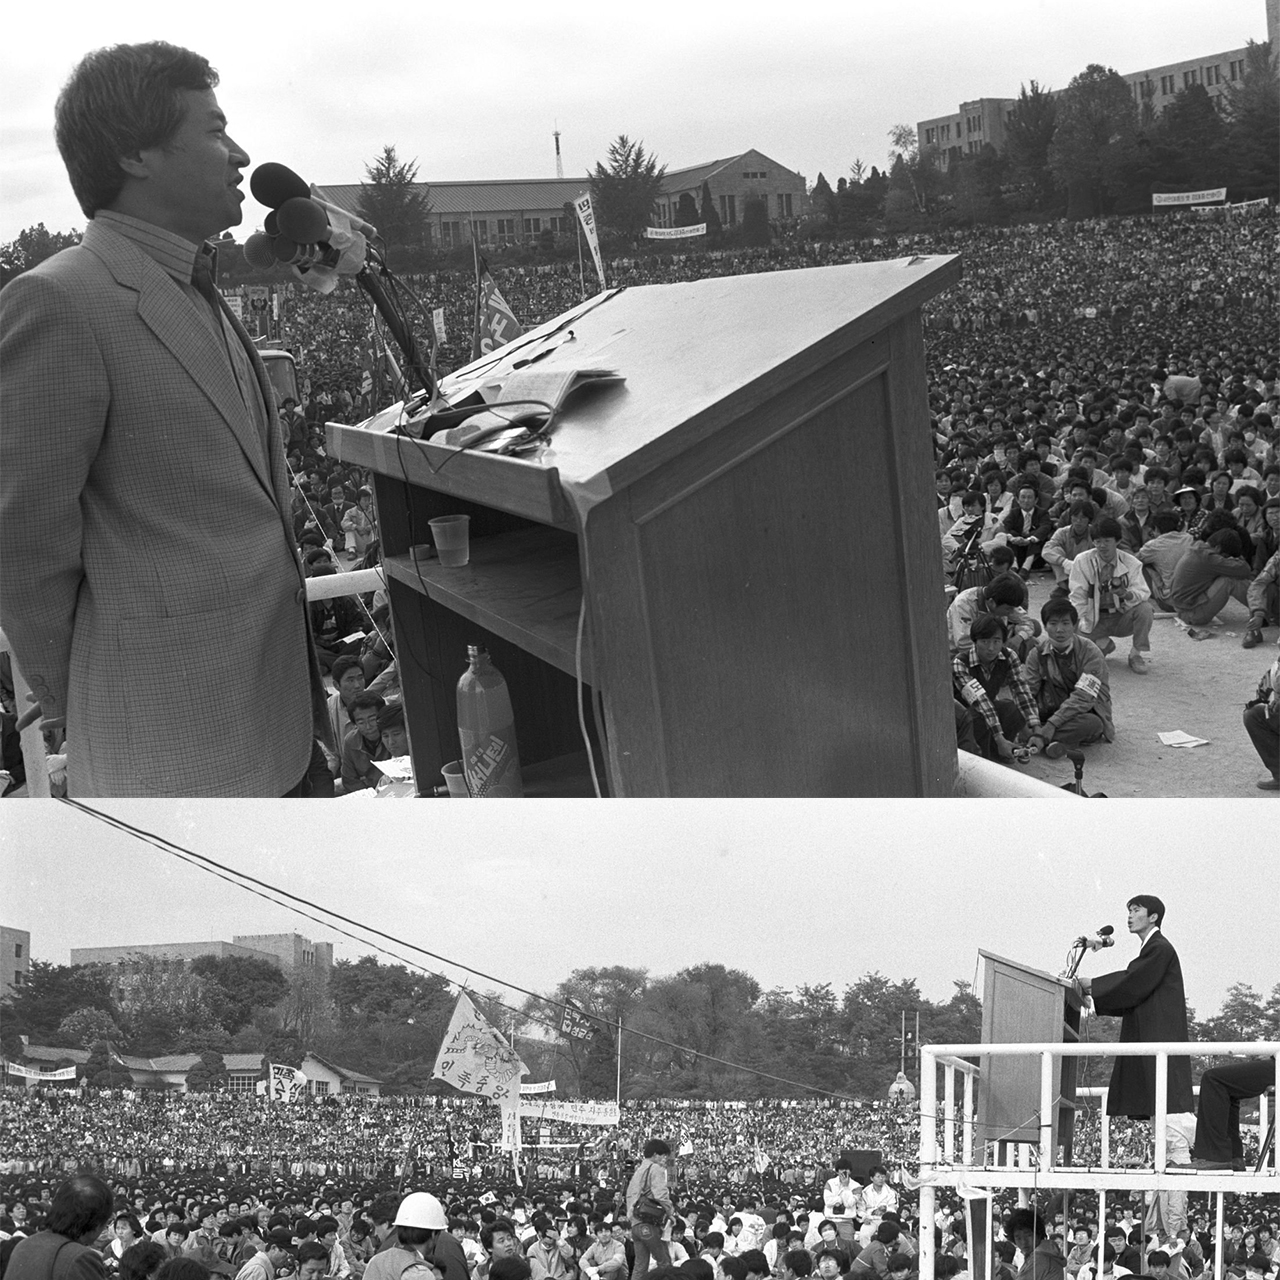 1987년 10월 25일 청학공위 주최로 열린 "공정선거보장을 위한 거국중립내각 실천대회"에서 연설하는 김희택 민청련 의장(위)과 이인영 전대협 의장(아래)